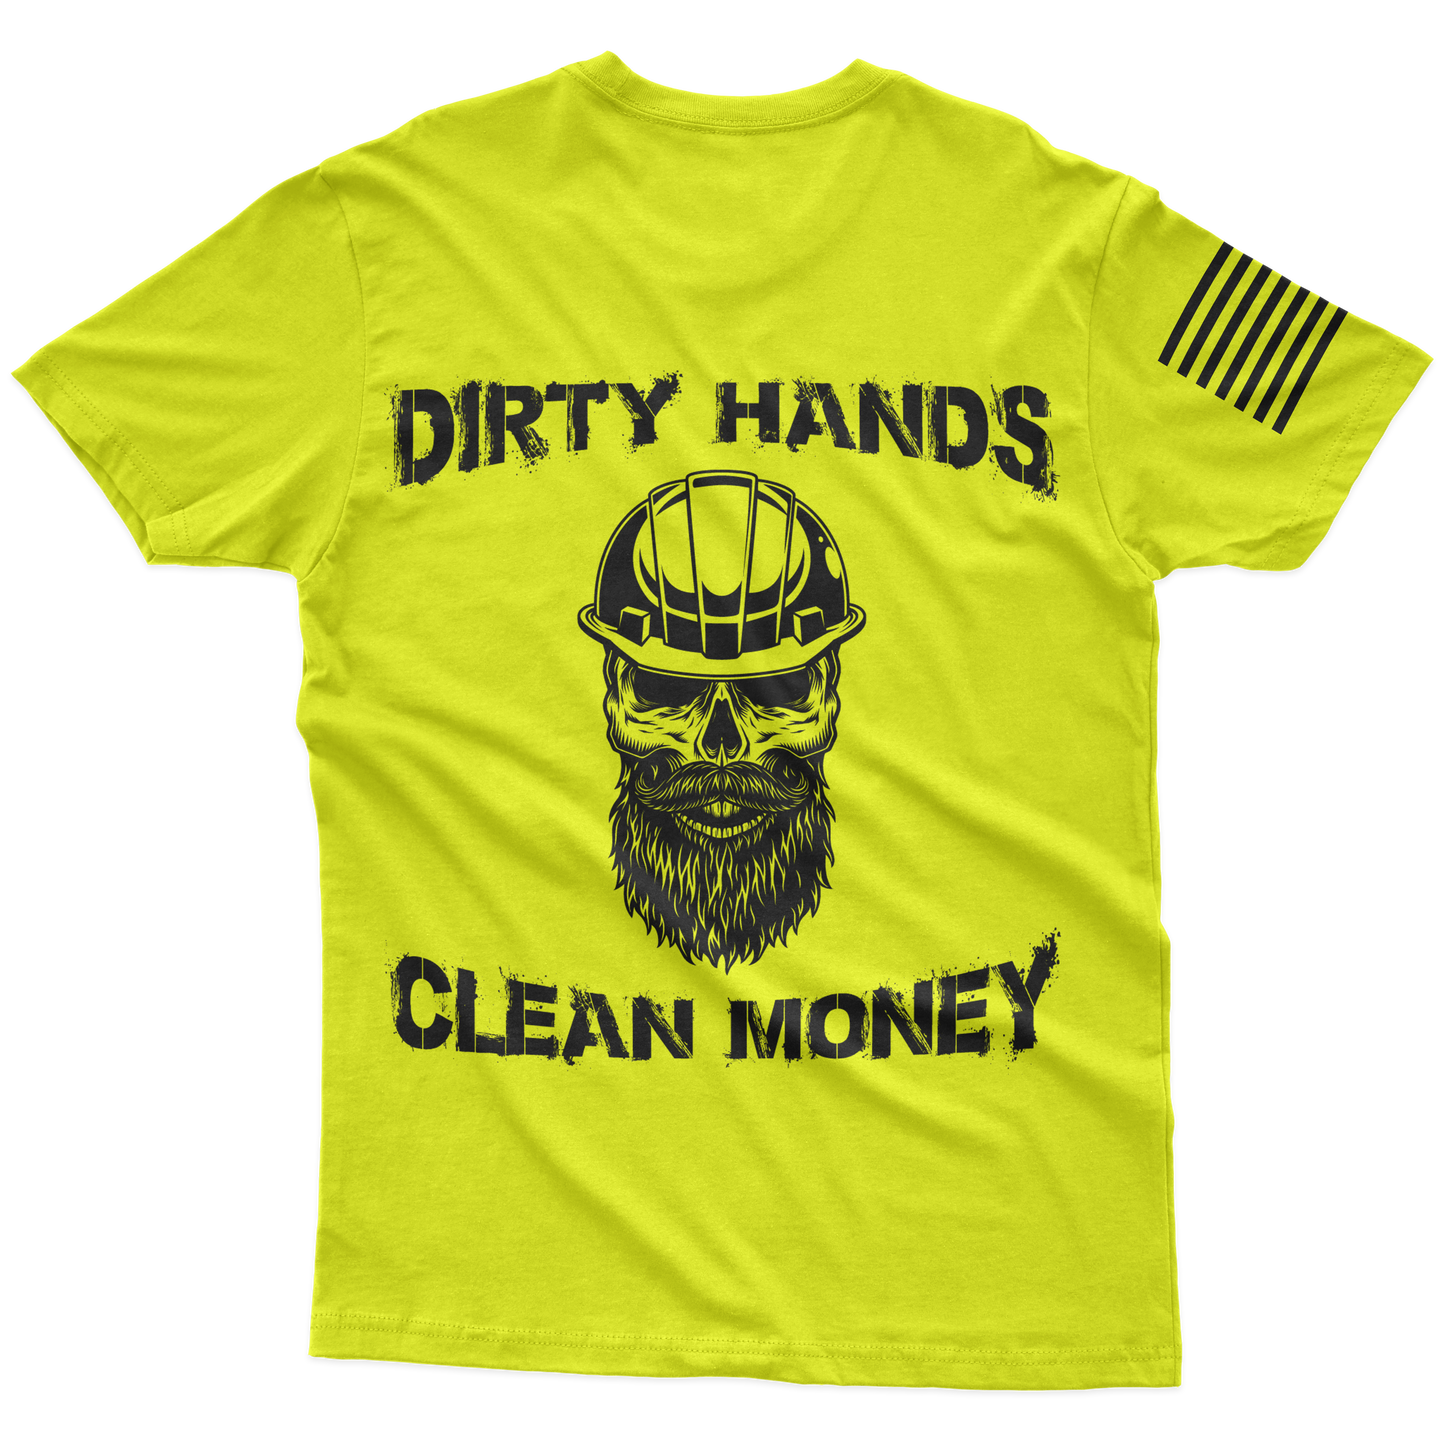 Clean Money Hi-Vis T-Shirt